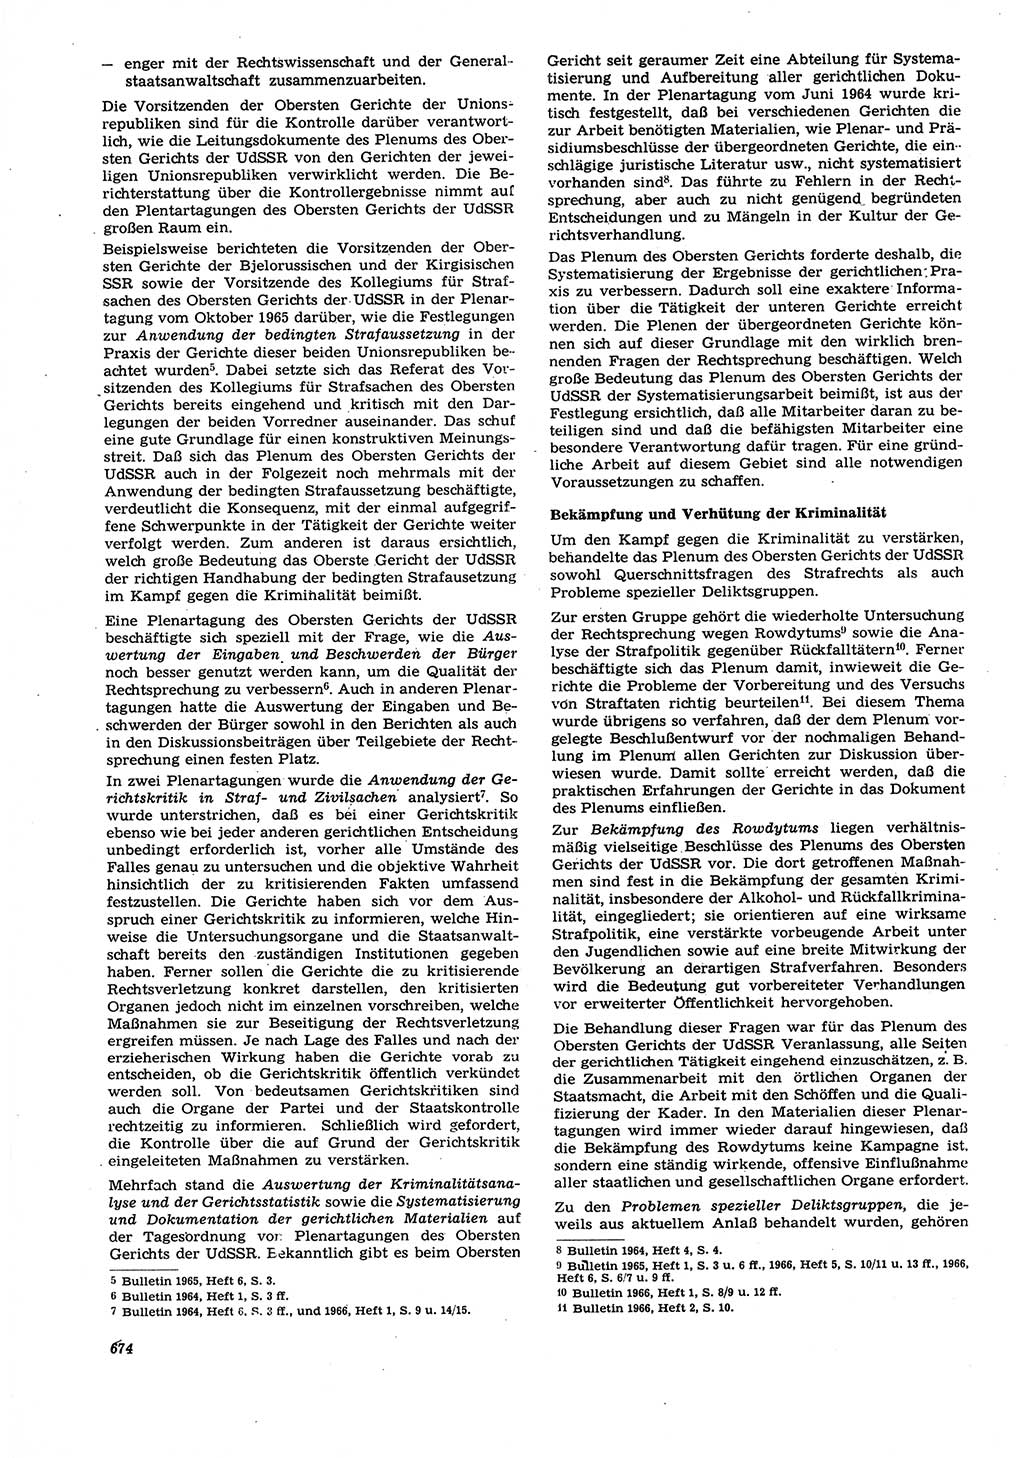 Neue Justiz (NJ), Zeitschrift für Recht und Rechtswissenschaft [Deutsche Demokratische Republik (DDR)], 21. Jahrgang 1967, Seite 674 (NJ DDR 1967, S. 674)